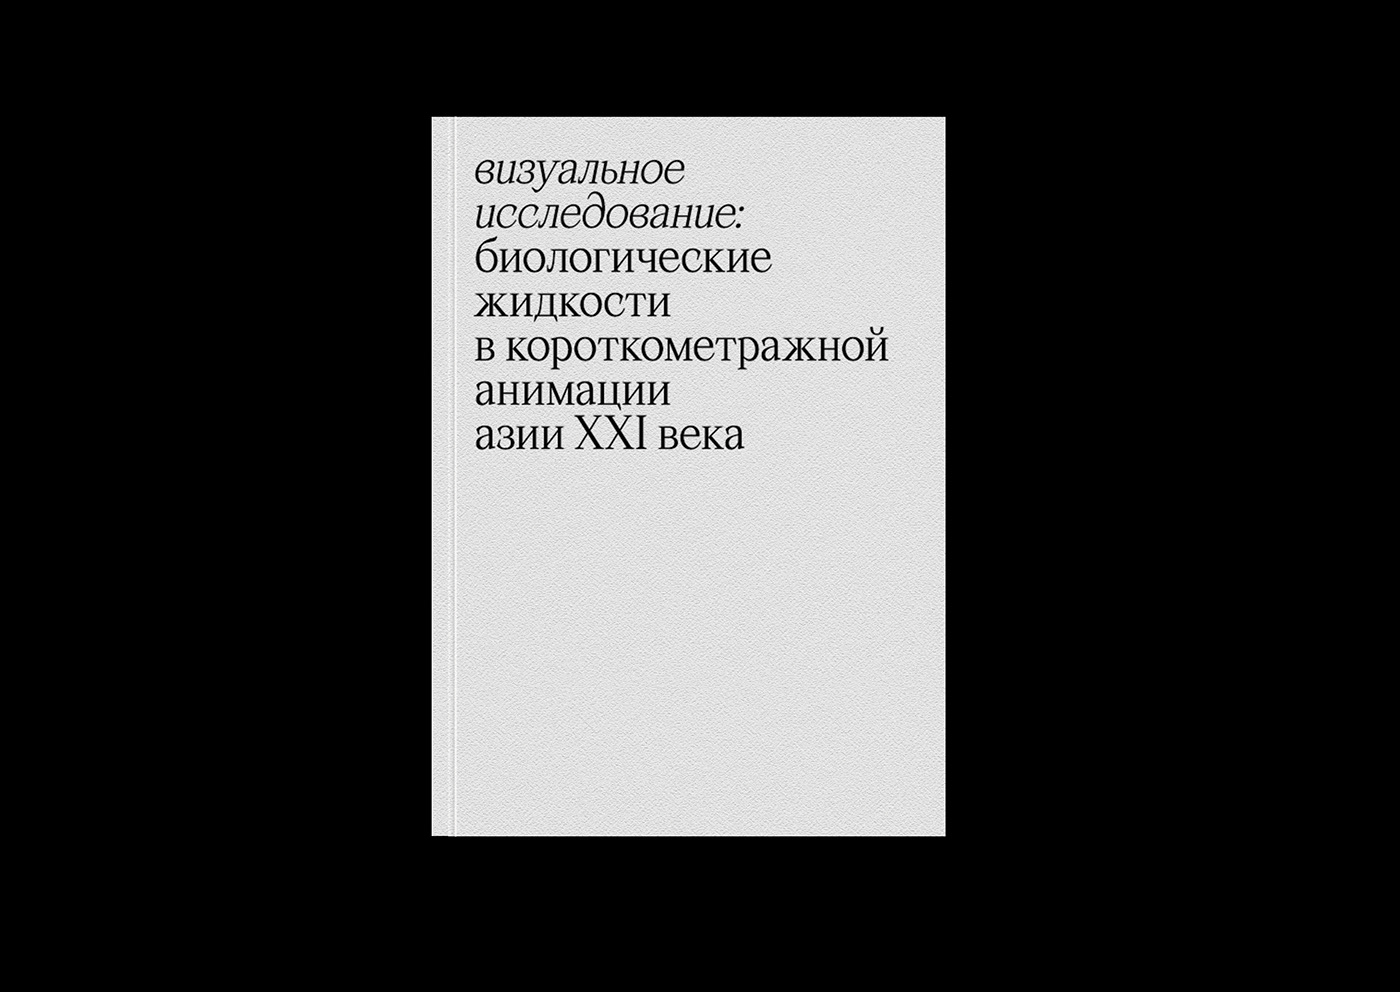 book book design typography   книга верстка типографика graphic design  визуальное исследование